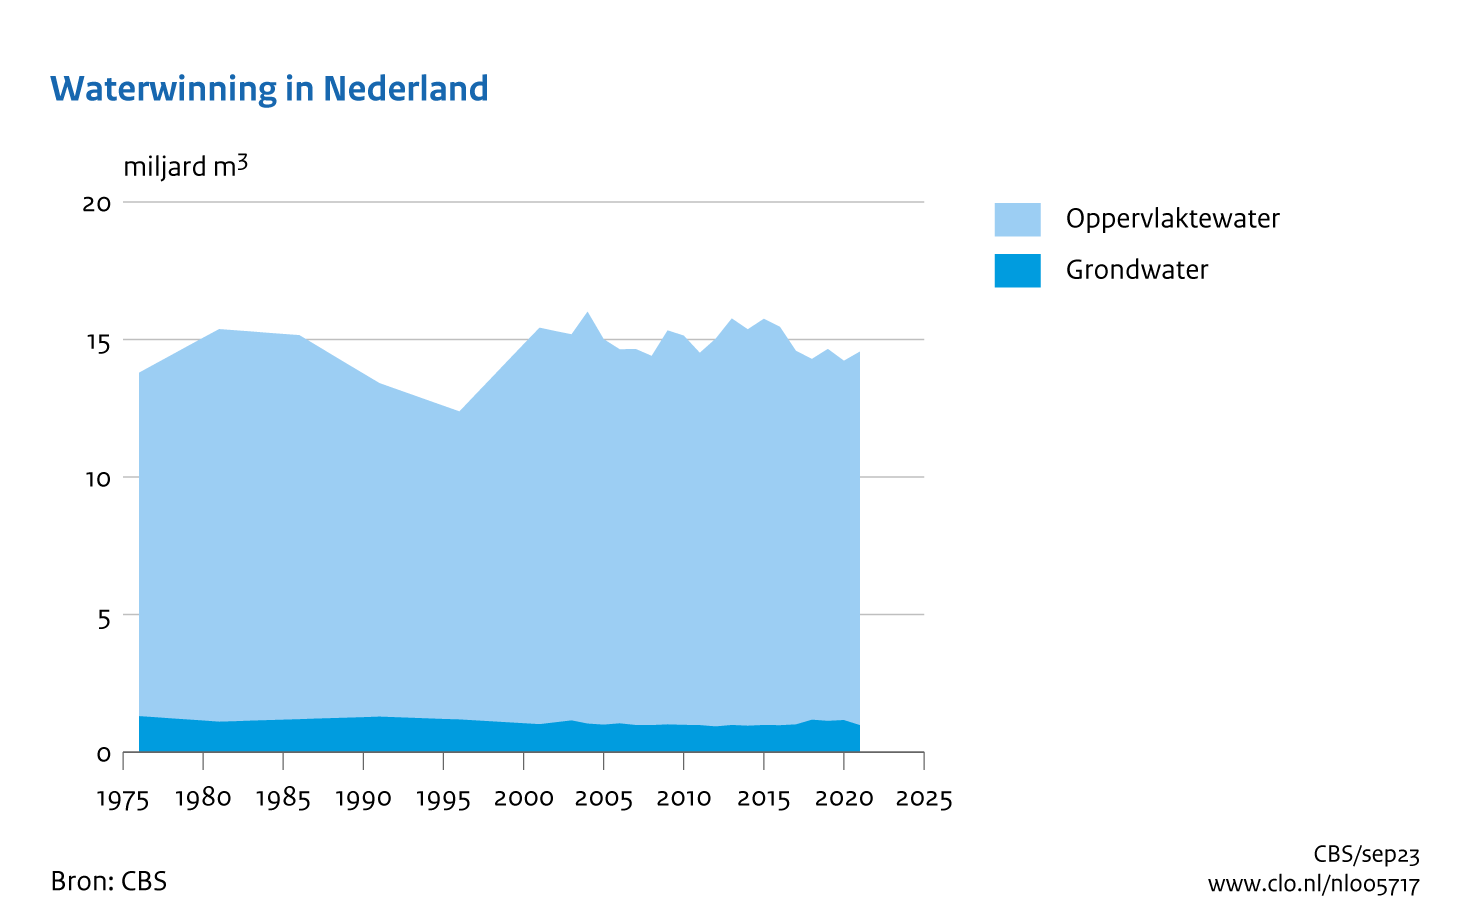 Figuur Waterwinning in Nederland 1976-2021. In de rest van de tekst wordt deze figuur uitgebreider uitgelegd.